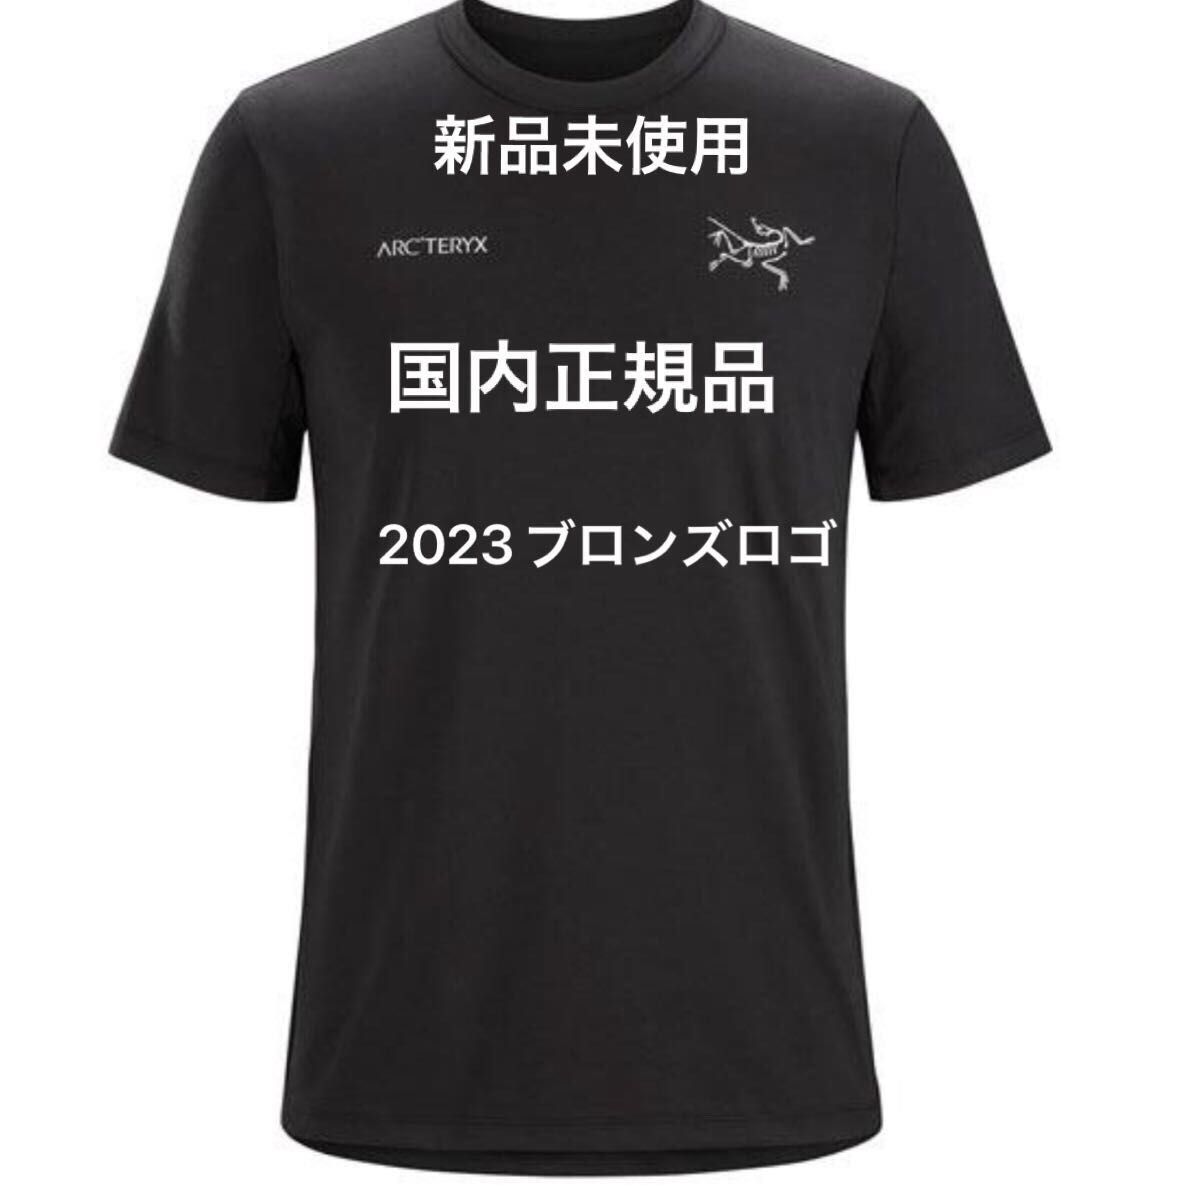 アークテリクス Tシャツ キャプティブ スプリット Tシャツ X000006523 メンズ ARC'TERYX